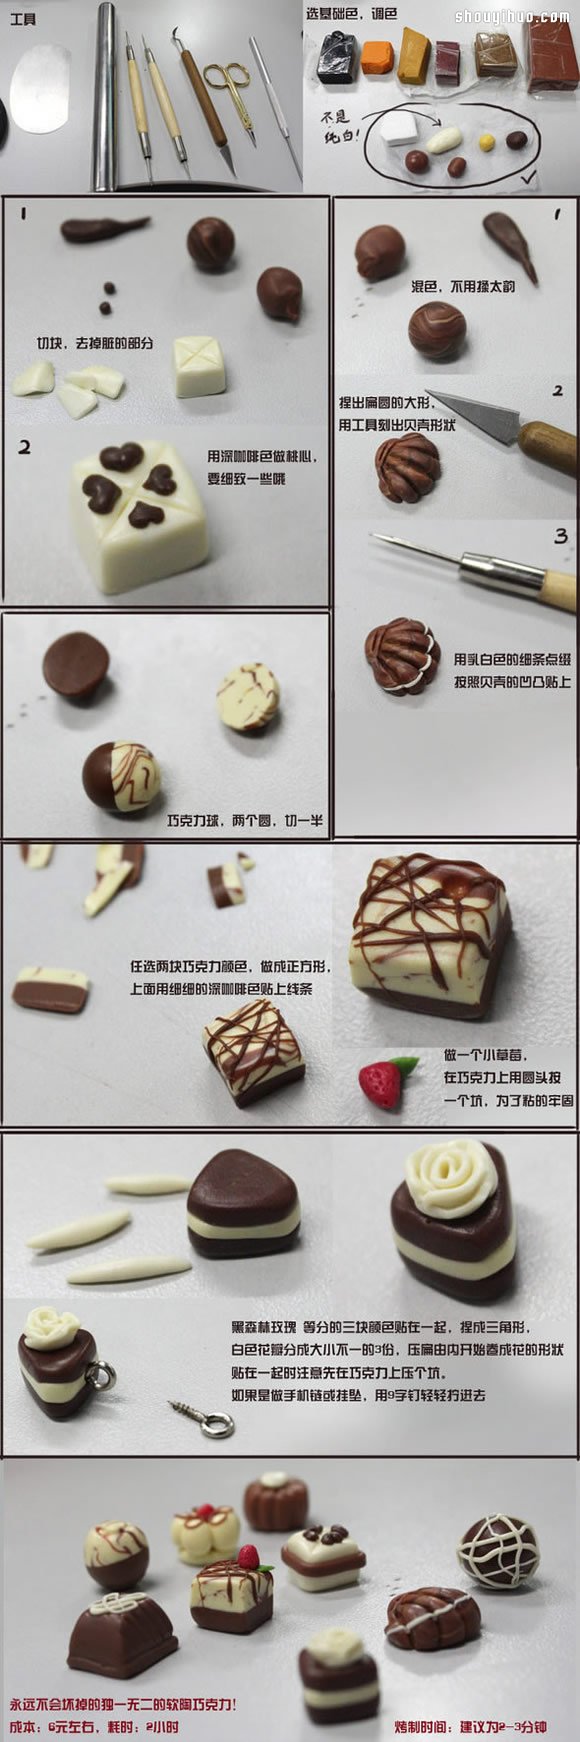 软陶巧克力糖果挂件装饰品手工制作图解教程